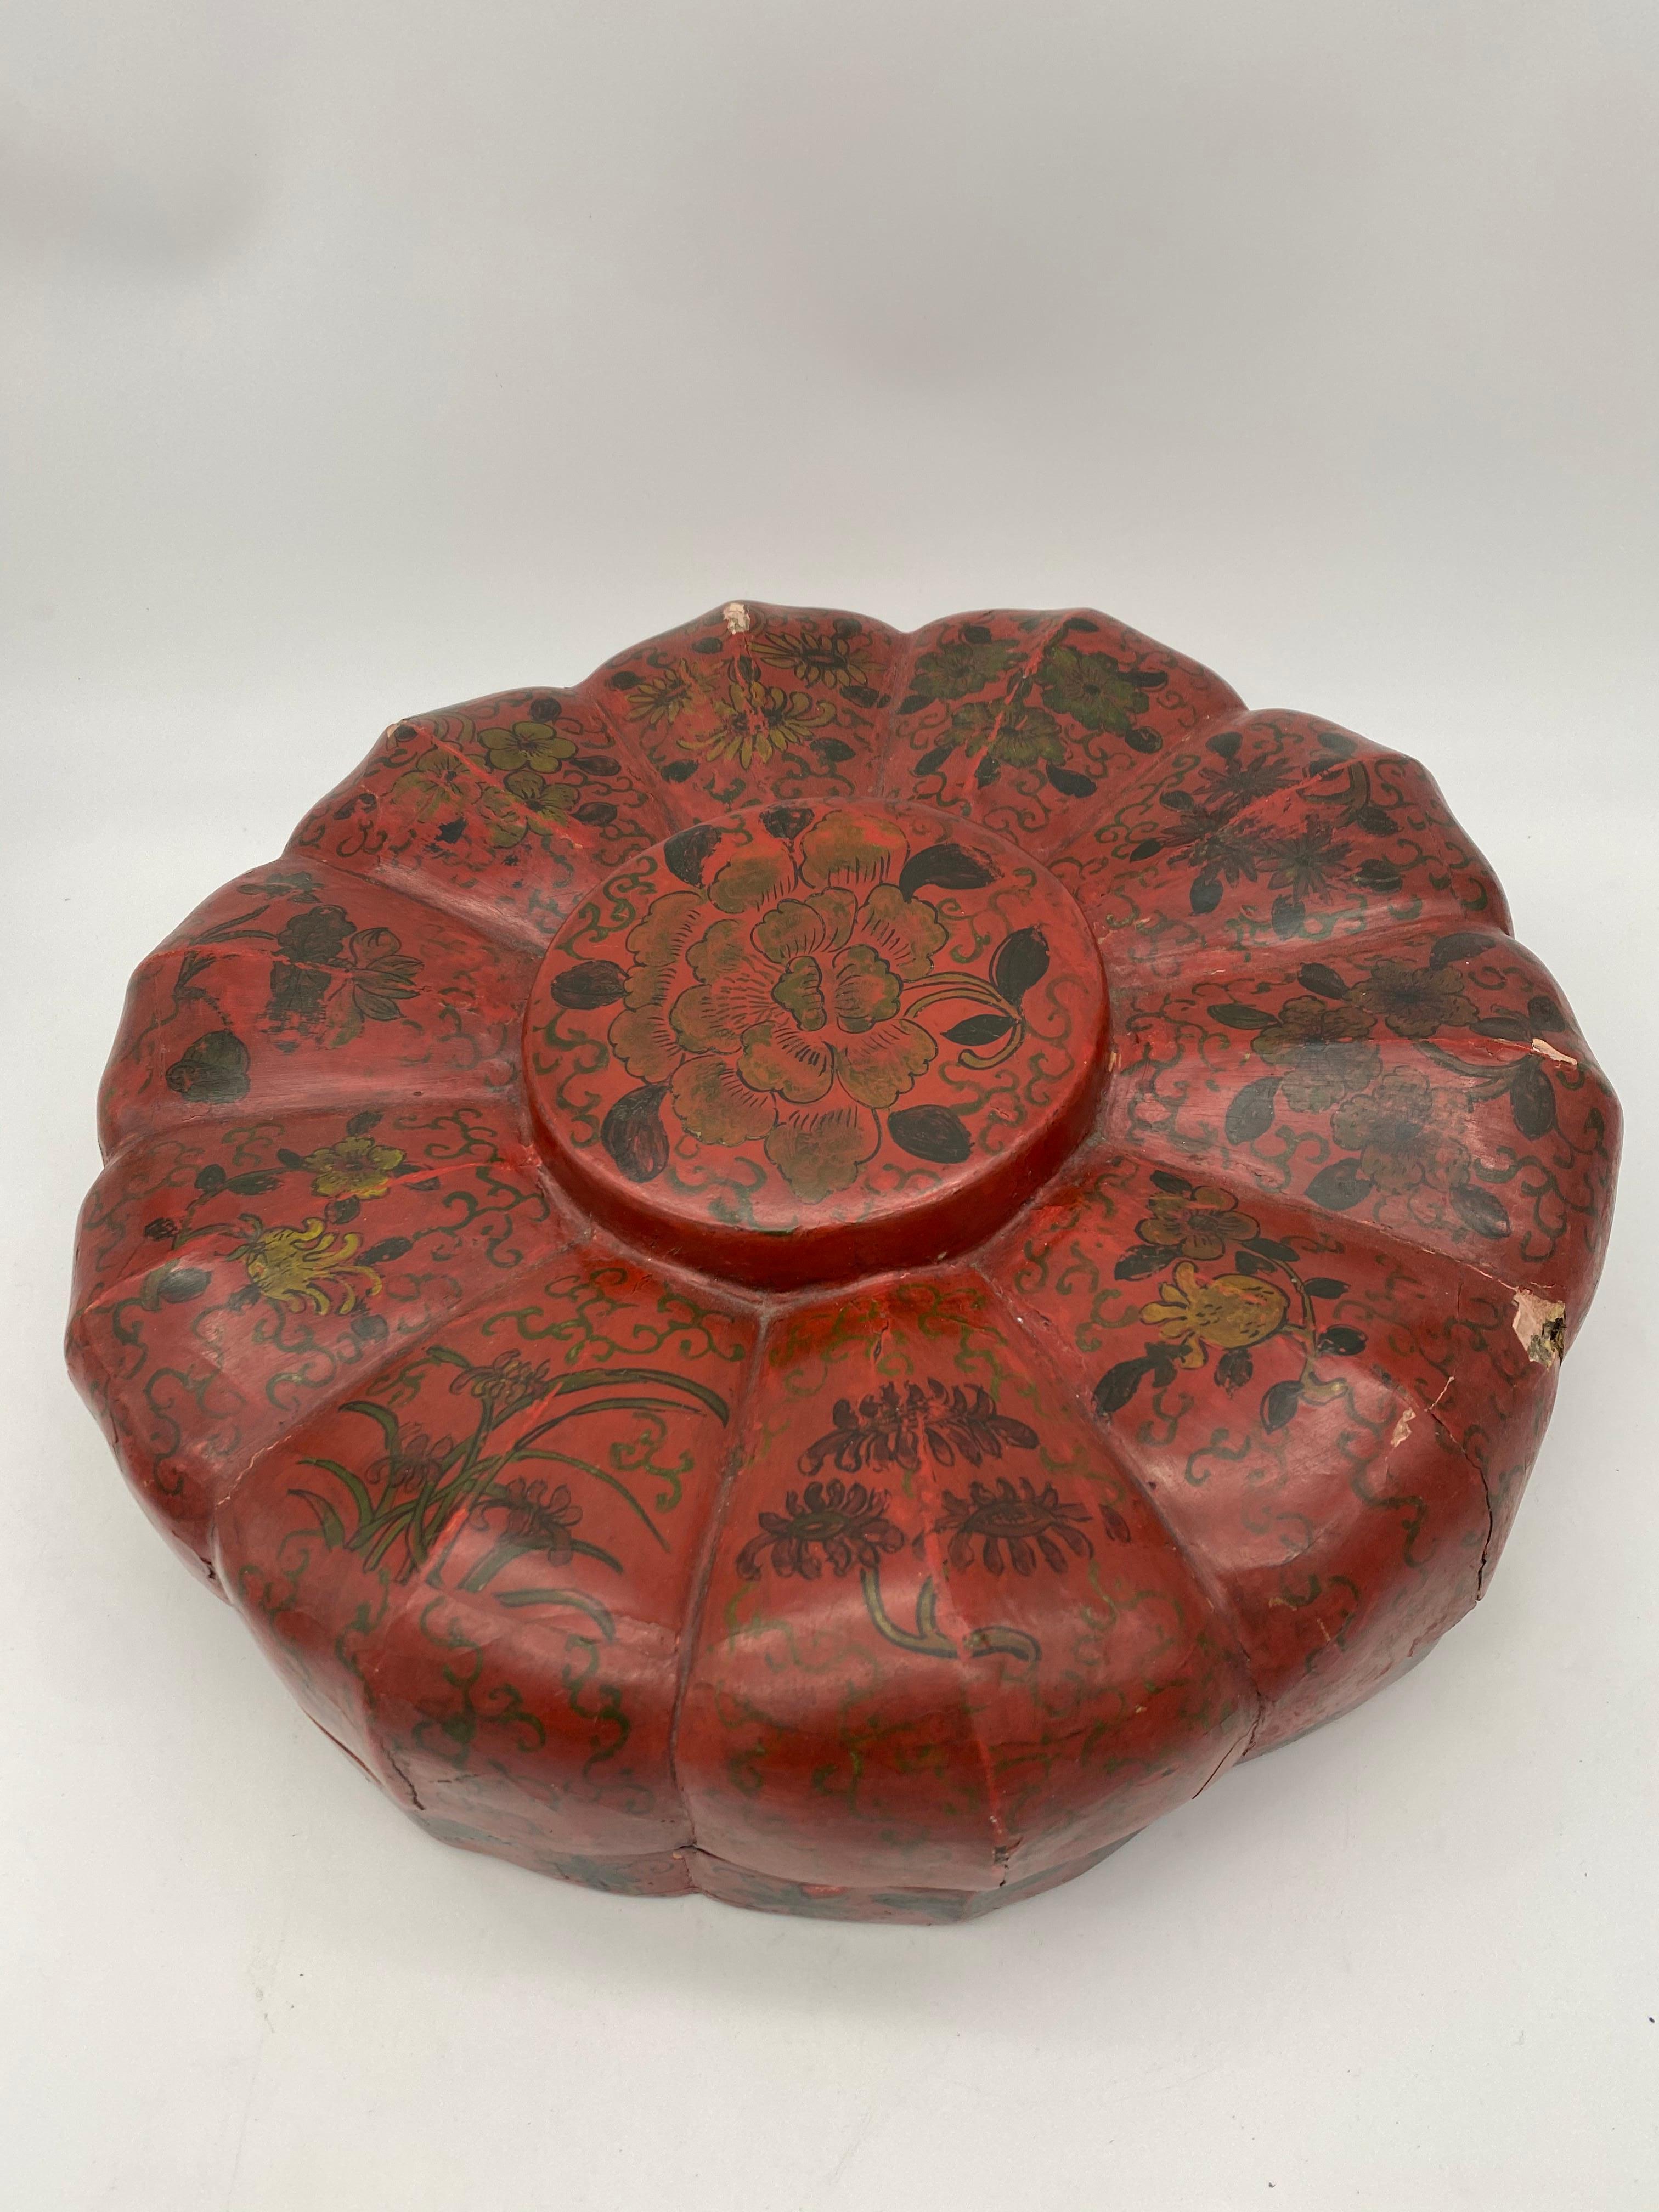 Chinesische Rotlackdose aus der Qing-Dynastie. Enthält neun Teile. Vorher in ausgezeichnetem Zustand. Aber wenn ich Fotos mache, fällt es versehentlich auf den Boden und bricht irgendwo mit kaputt. Aber es ist trotzdem ein gutes Stück. Maße: 14